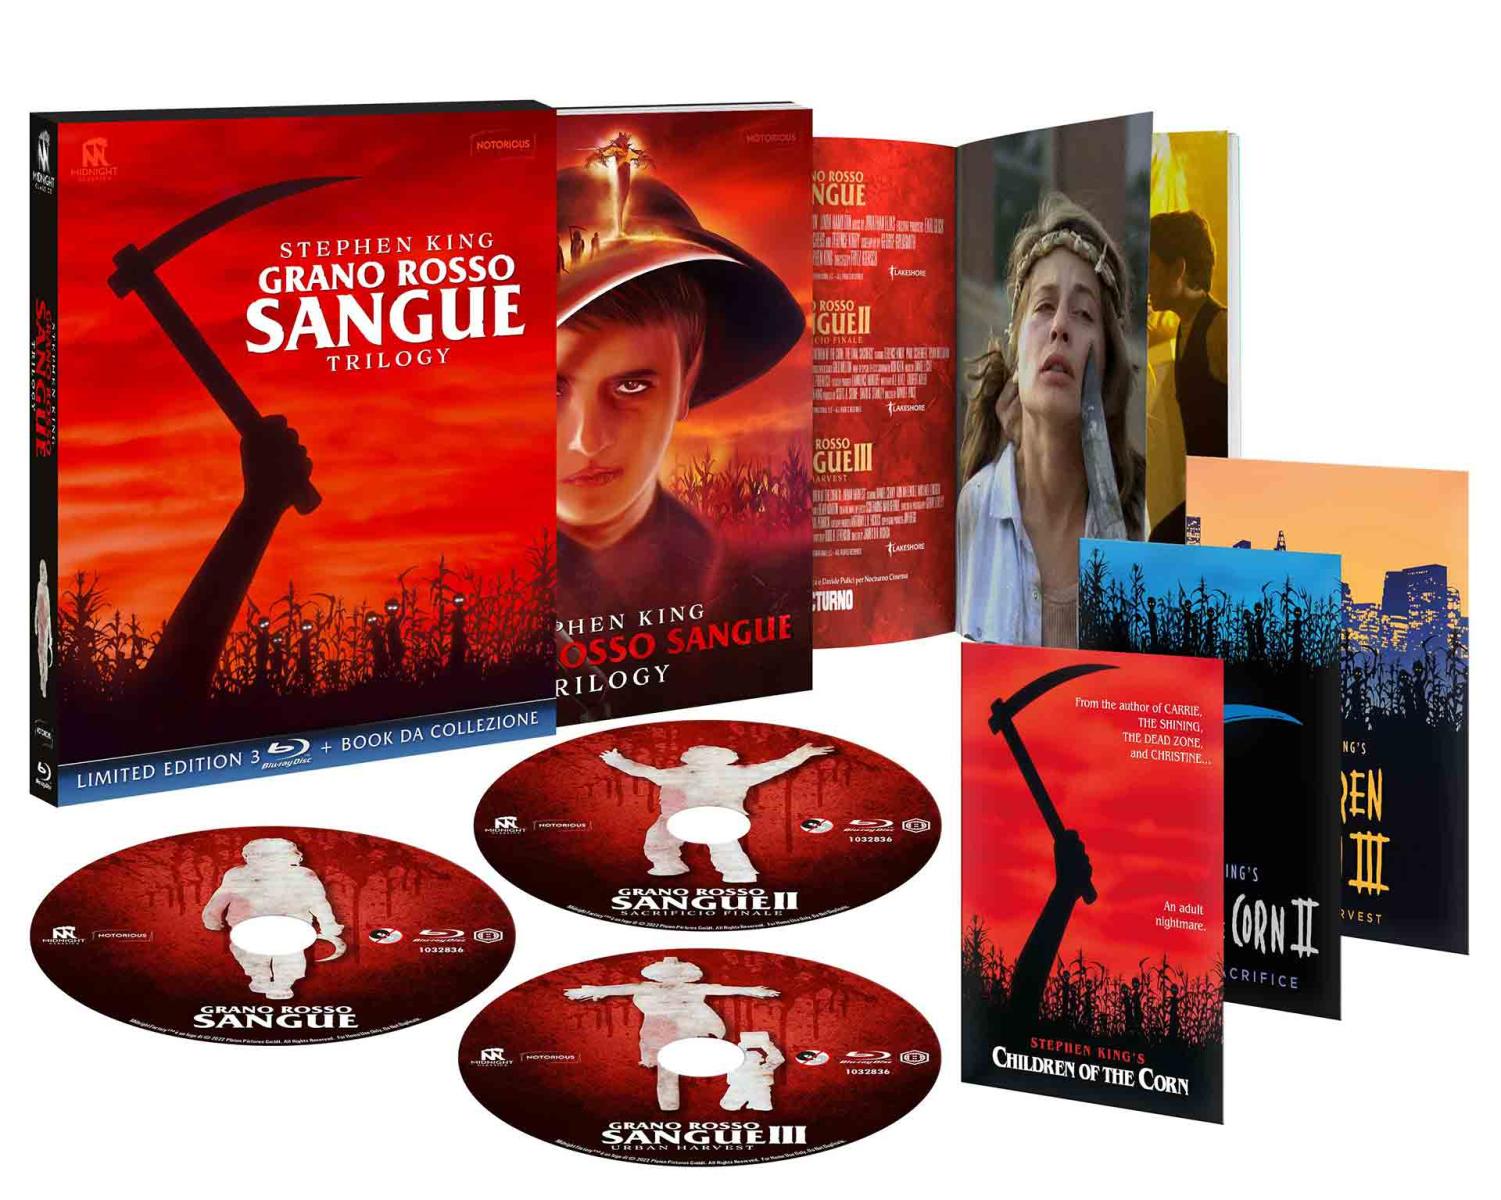 Grano Rosso Sangue Trilogy - Limited Edition 3 Blu-ray + Book da Collezione (Blu-ray) Image 7